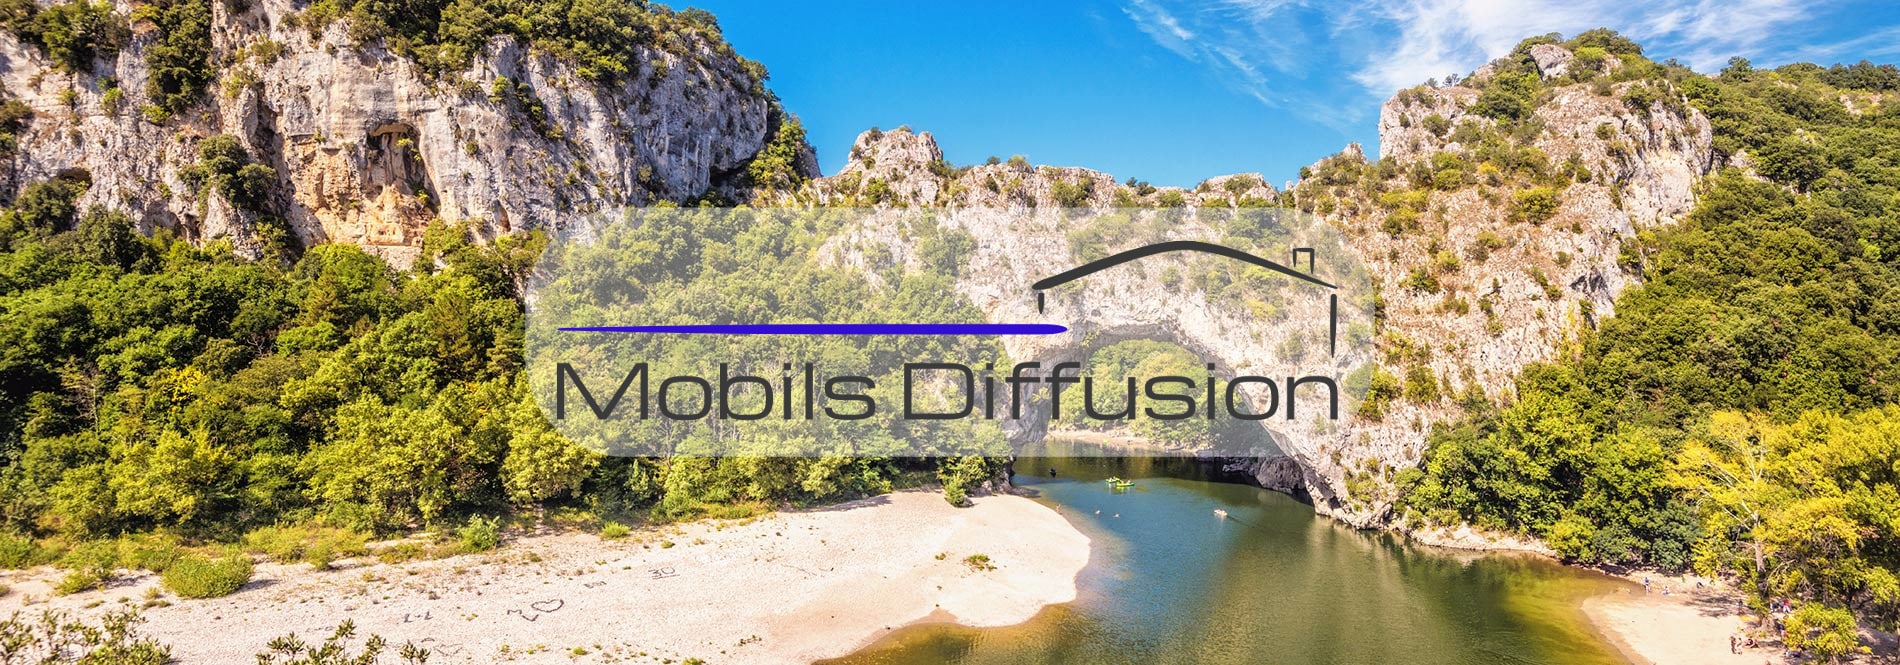 Mobils Diffusion - Vente et achat de mobil-home près des gorges de l’Ardèche (07)